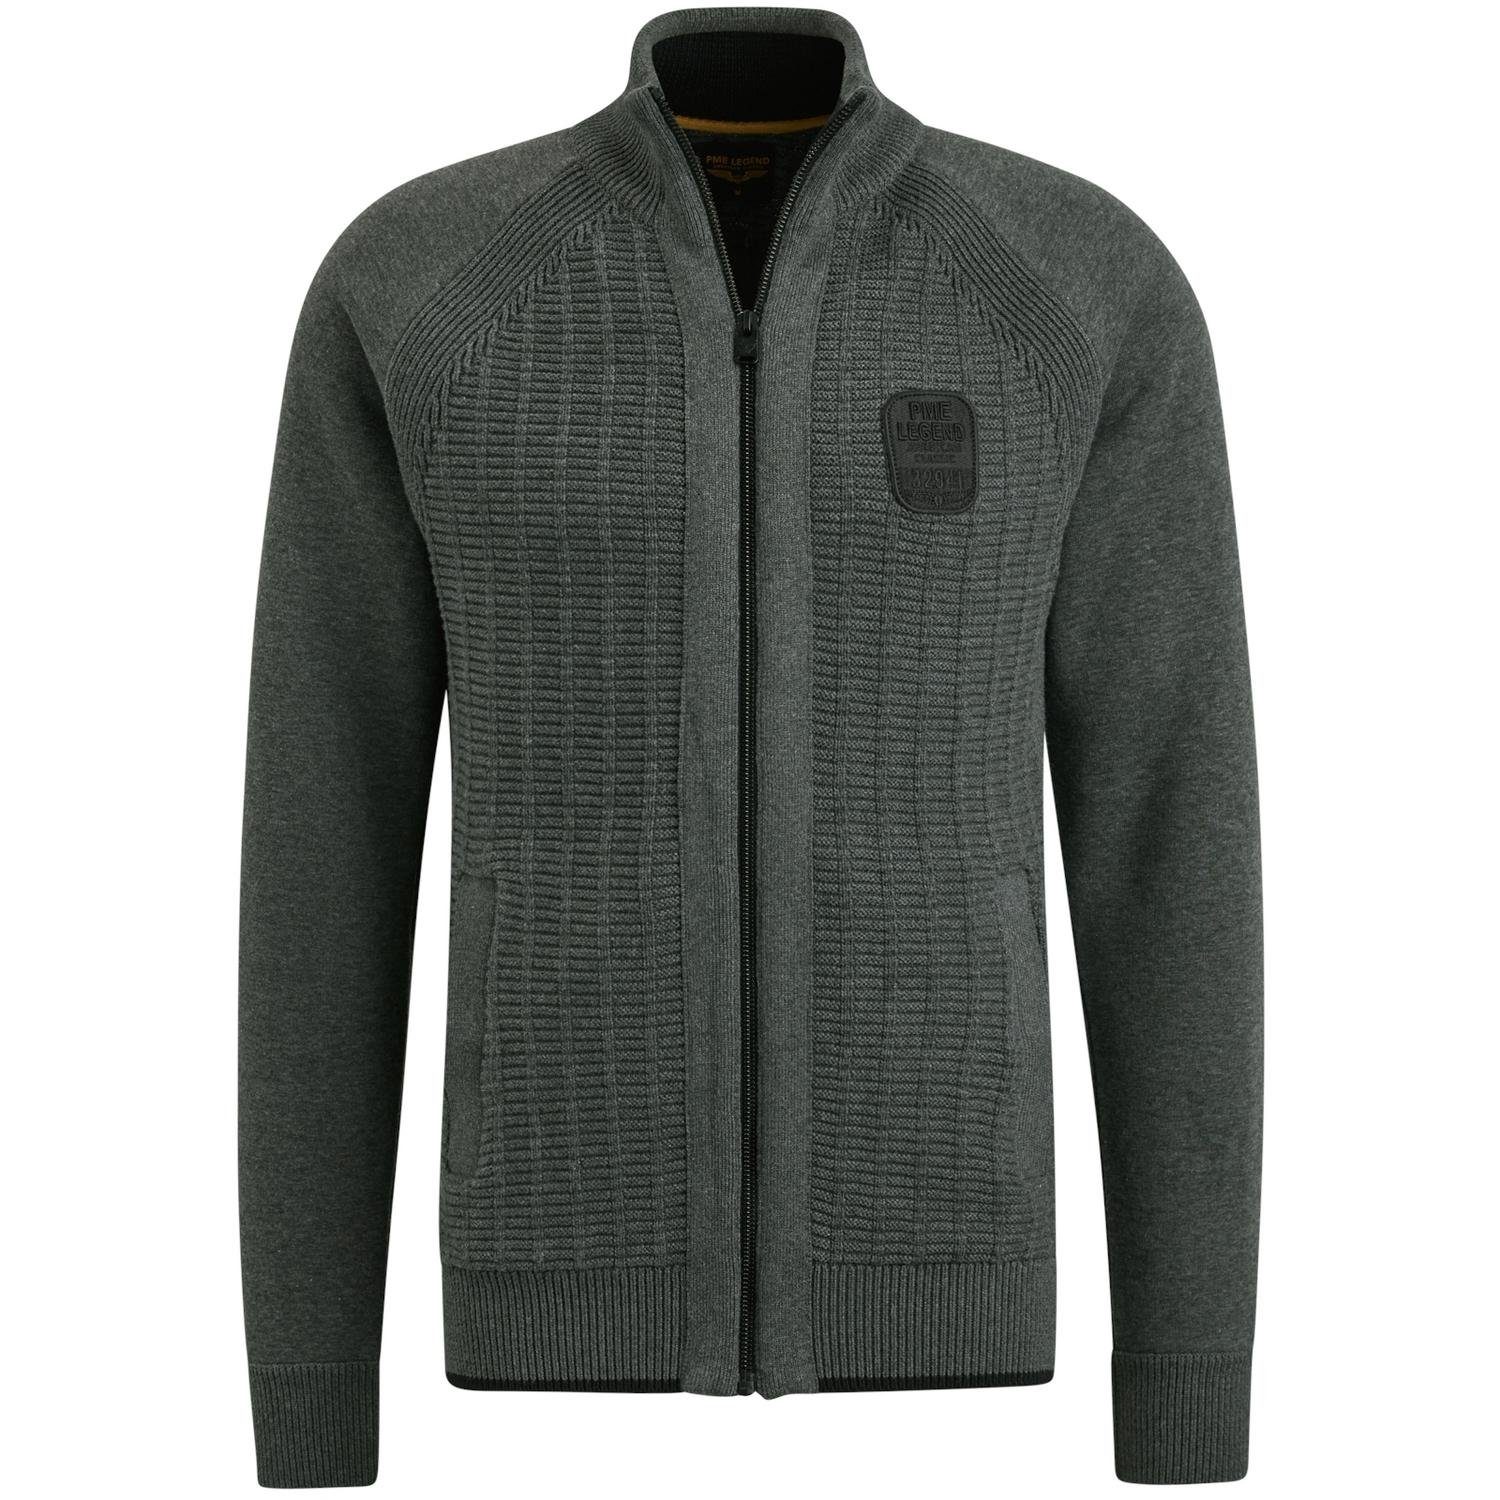 PME LEGEND Strickjacke Zip jacket knit sweat combination